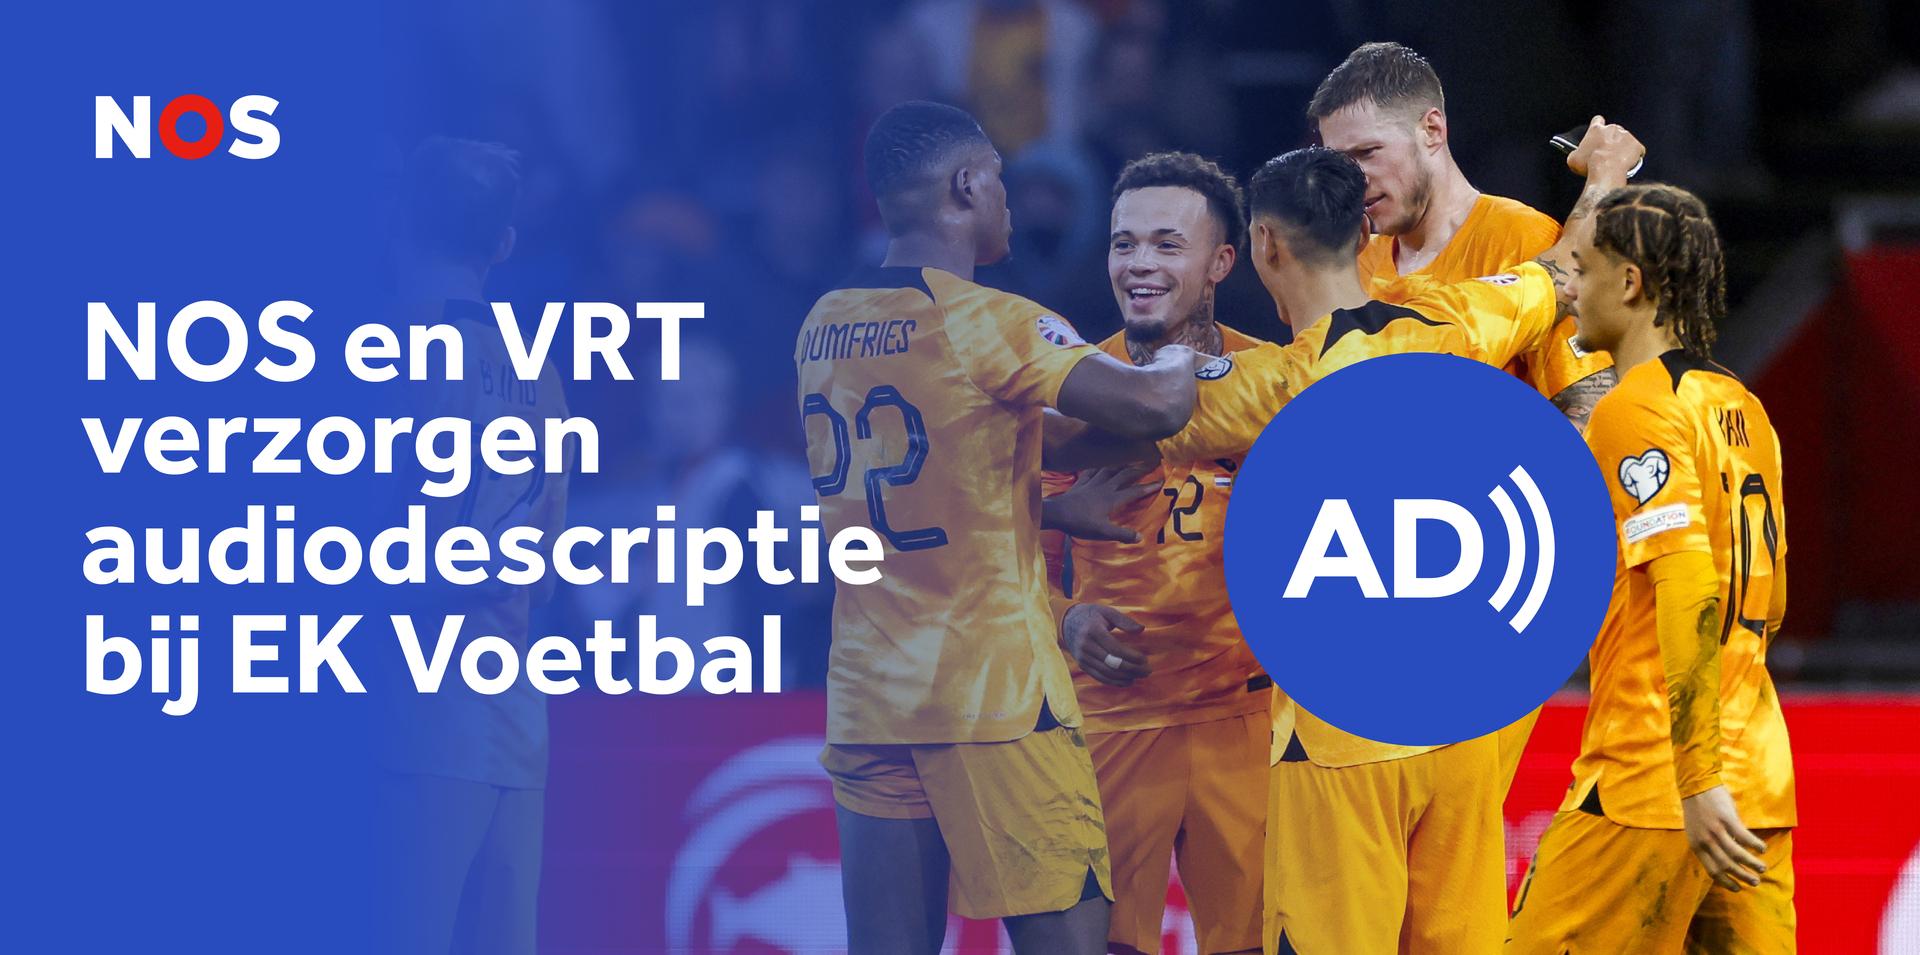 NOS en VRT verzorgen audiodescriptie bij EK Voetbal